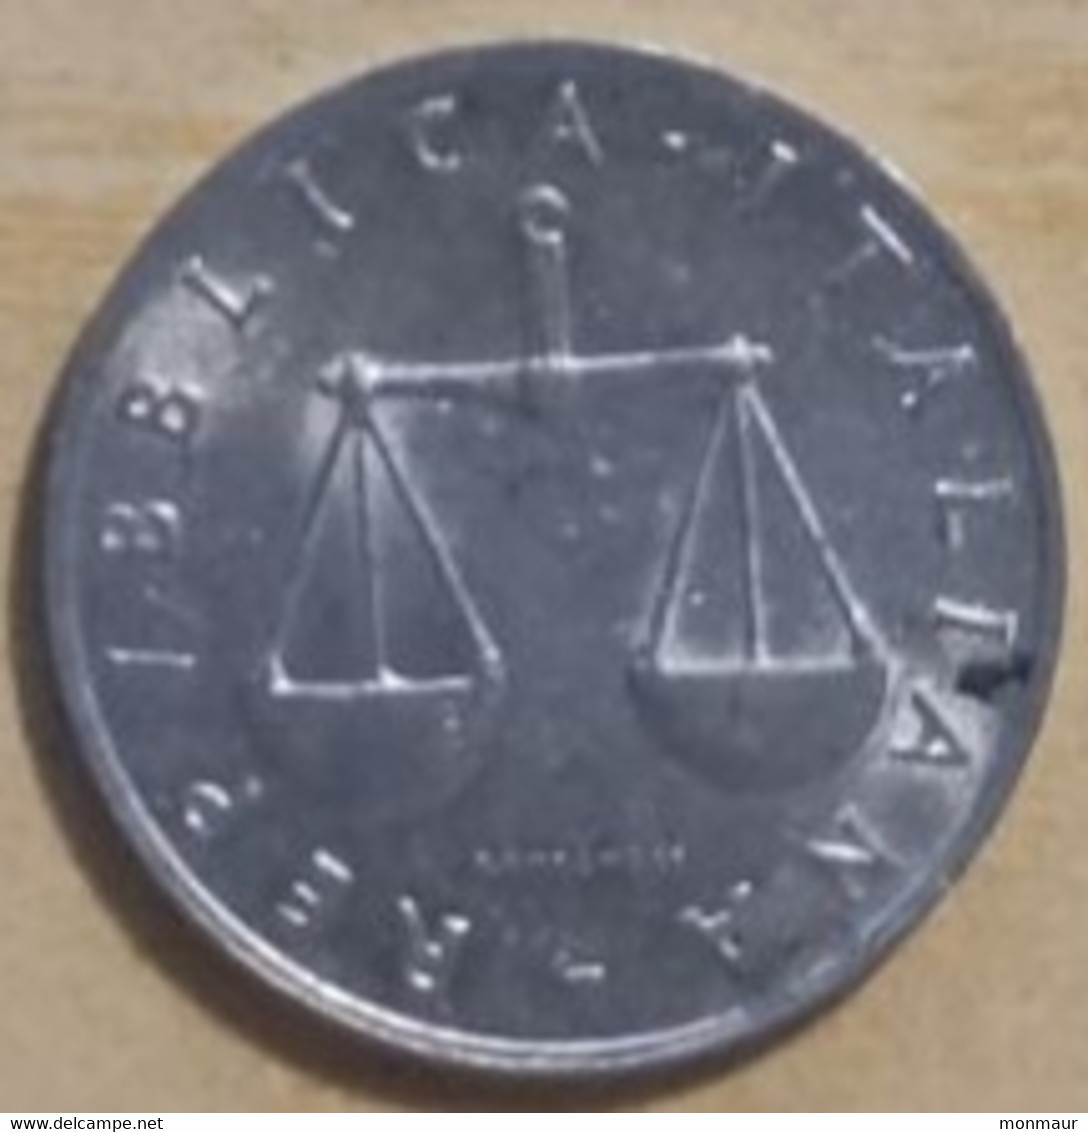 ITALIA REPUBBLICA 1 LIRA 1955 - 1 Lira